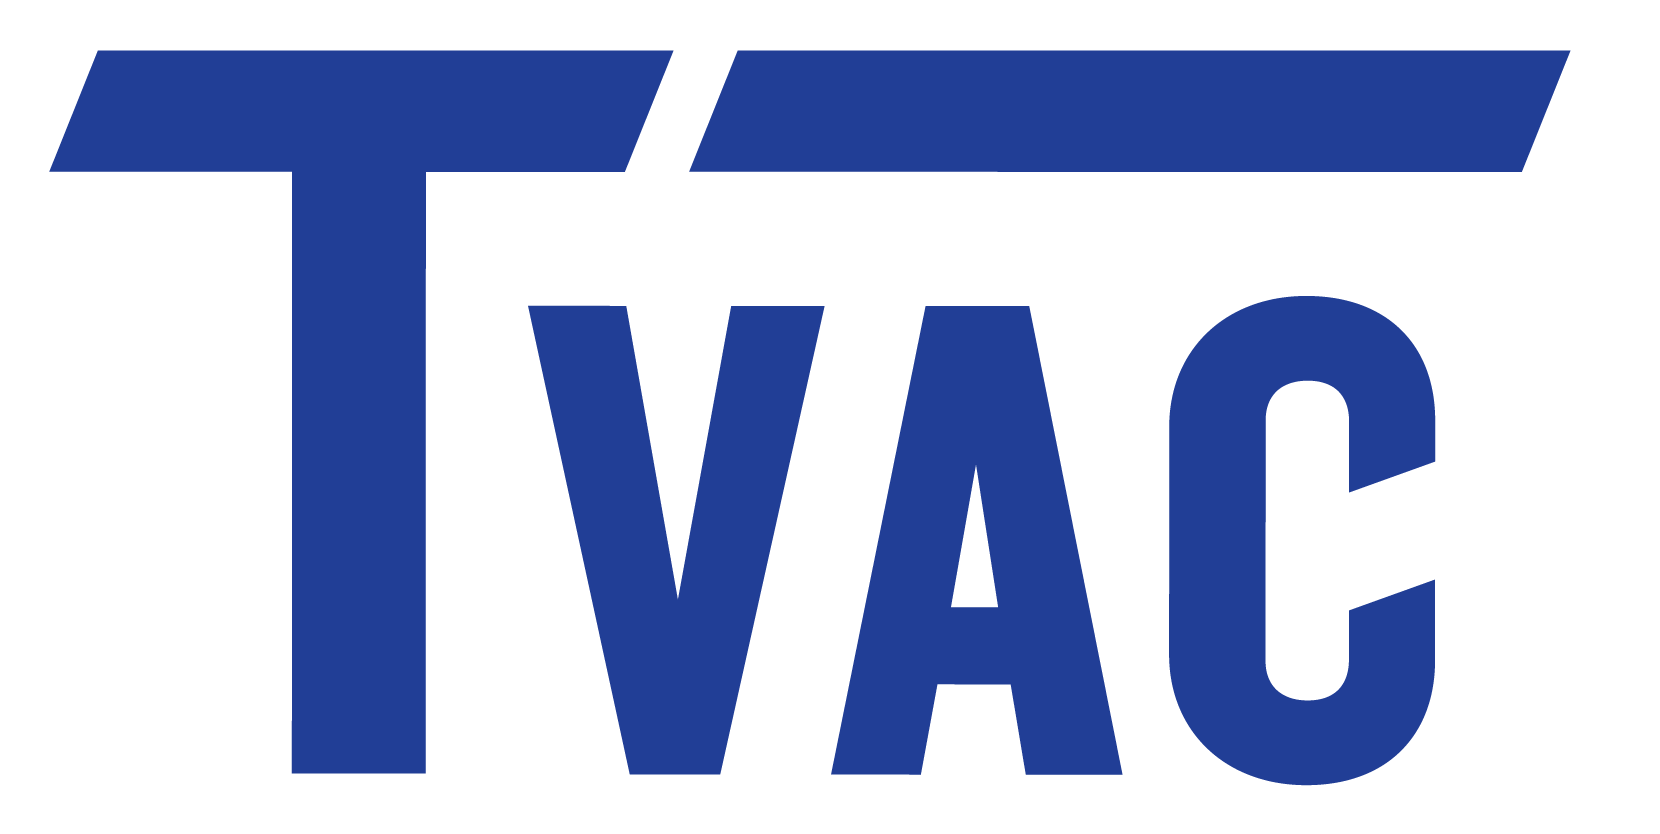 T-Vac Pump